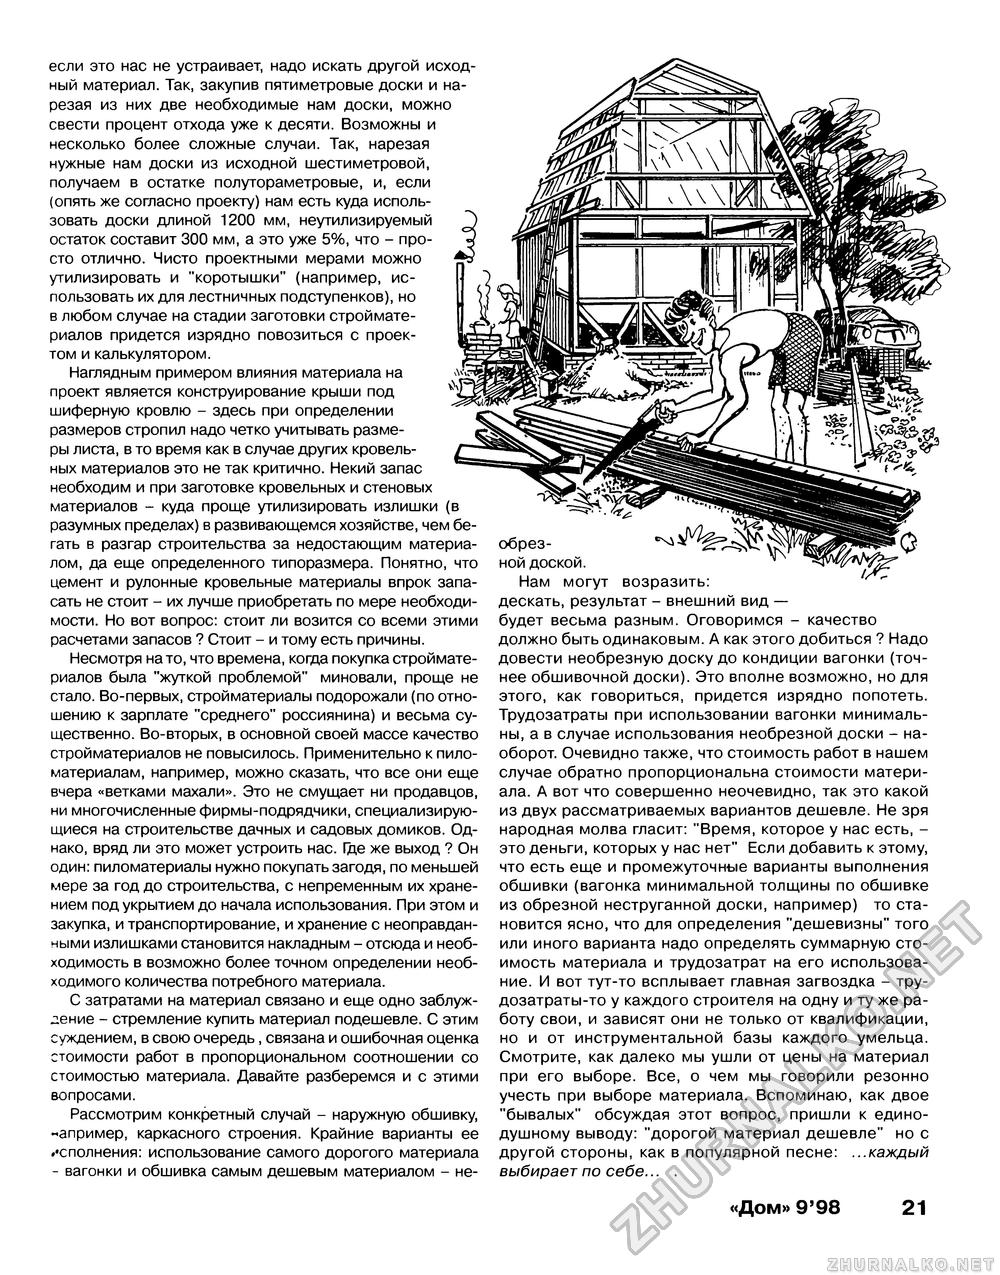 Дом 1998-09, страница 21